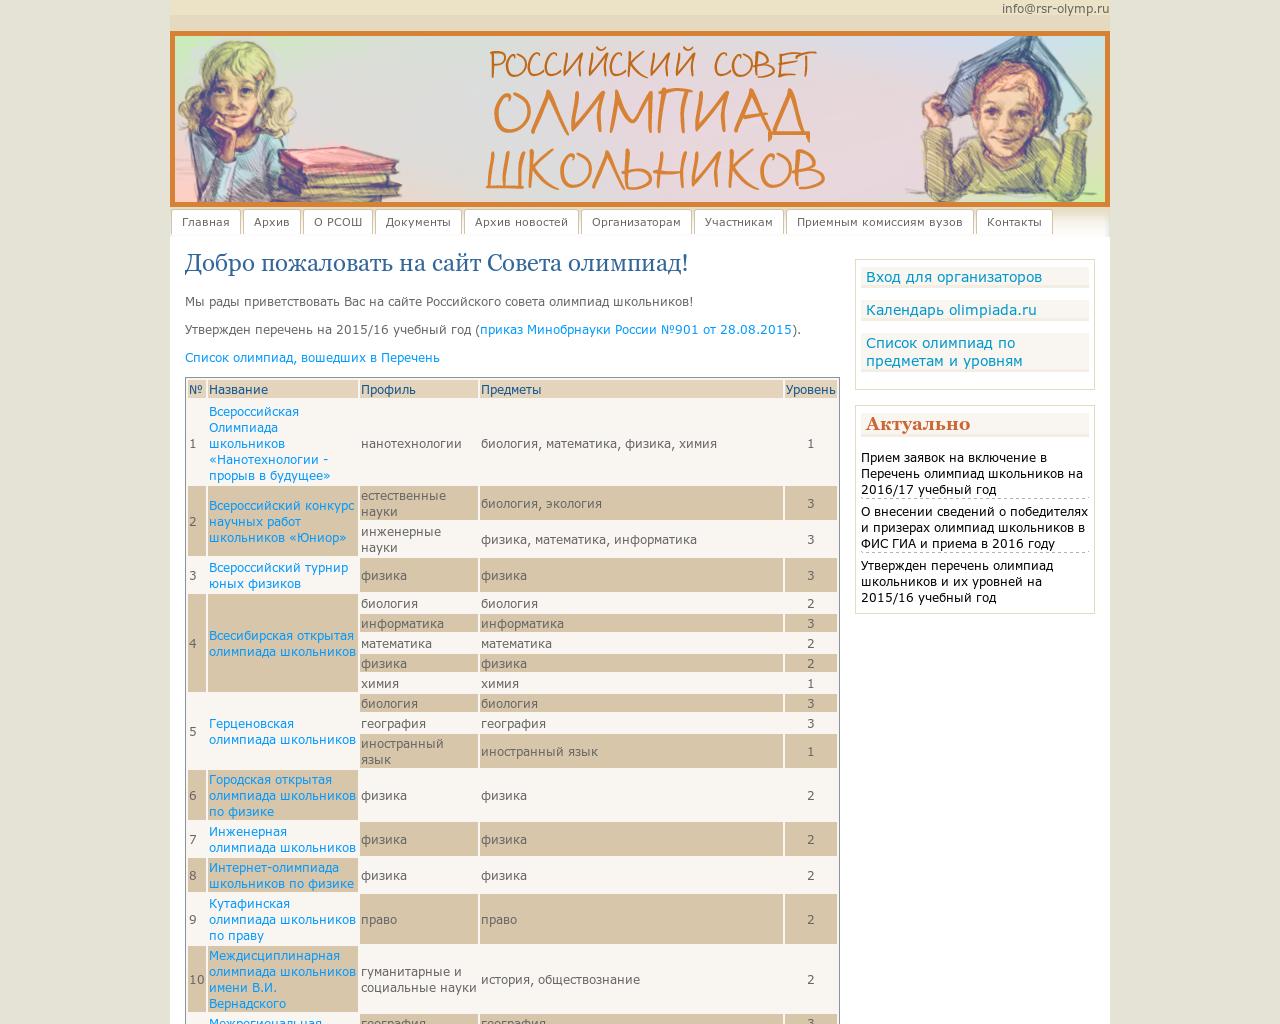 Изображение сайта rsr-olymp.ru в разрешении 1280x1024